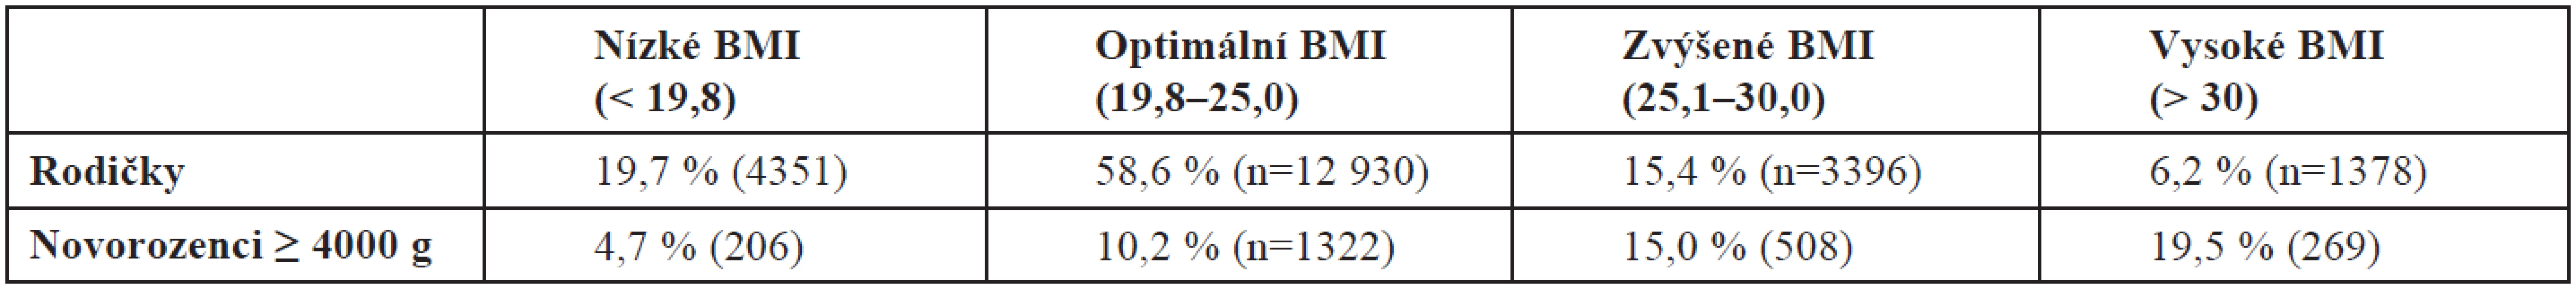 Rozdělení podle skupin BMI (n = 22 055)